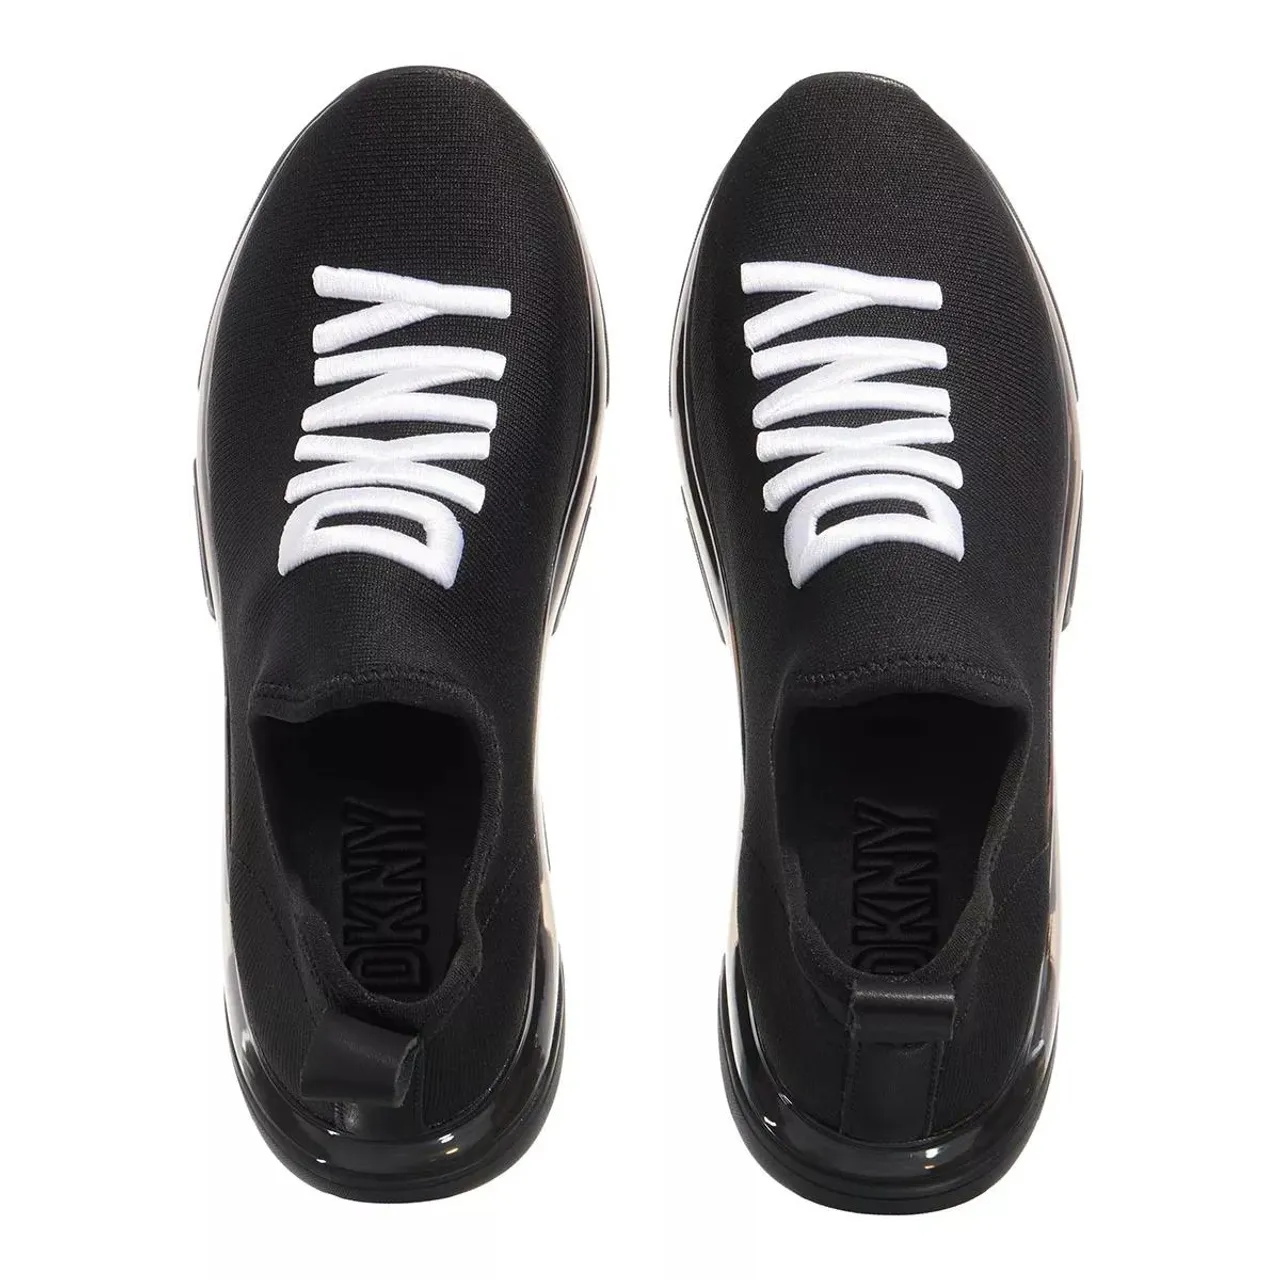 DKNY Sneakers - Tambre Slip On Sneaker - black - Sneakers for ladies